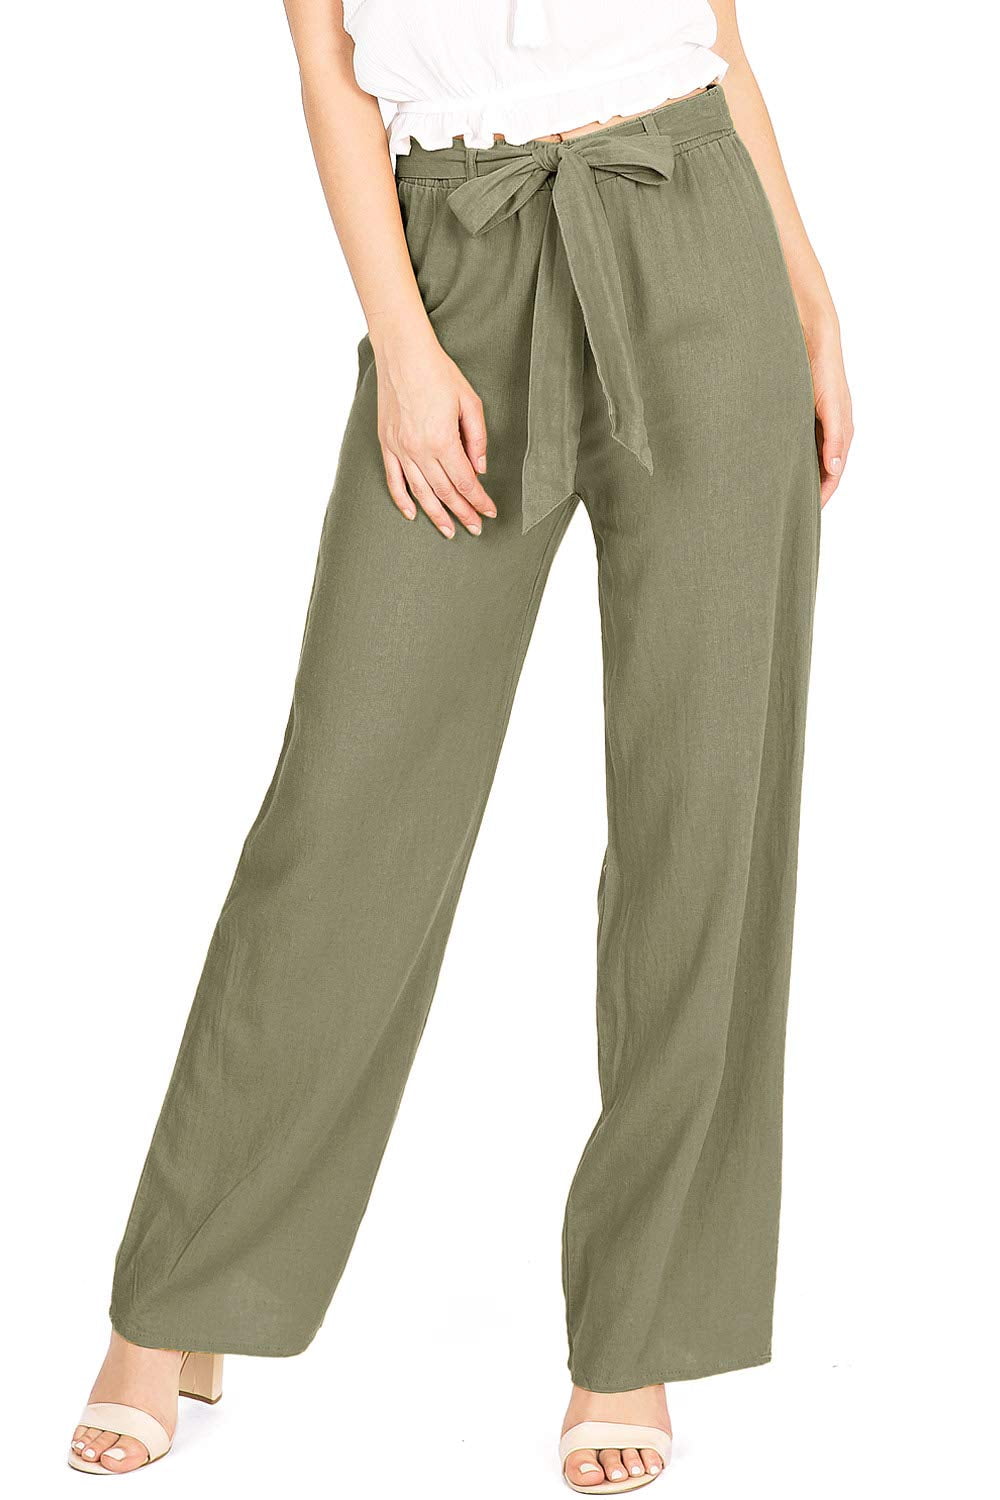 Corinne soft mint wide-leg pant, Soaked in Luxury, Shop Women%u2019s  Wide-Leg Pants Online in Canada